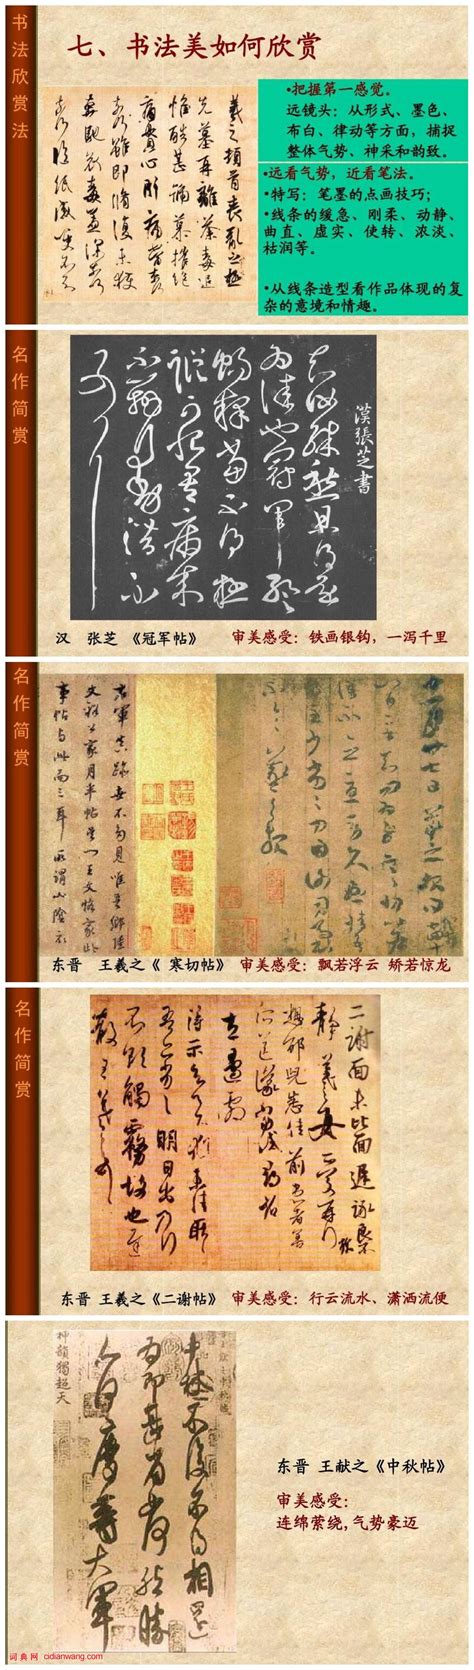 中国书法起源、发展及巅峰（3）_书法欣赏_词典网